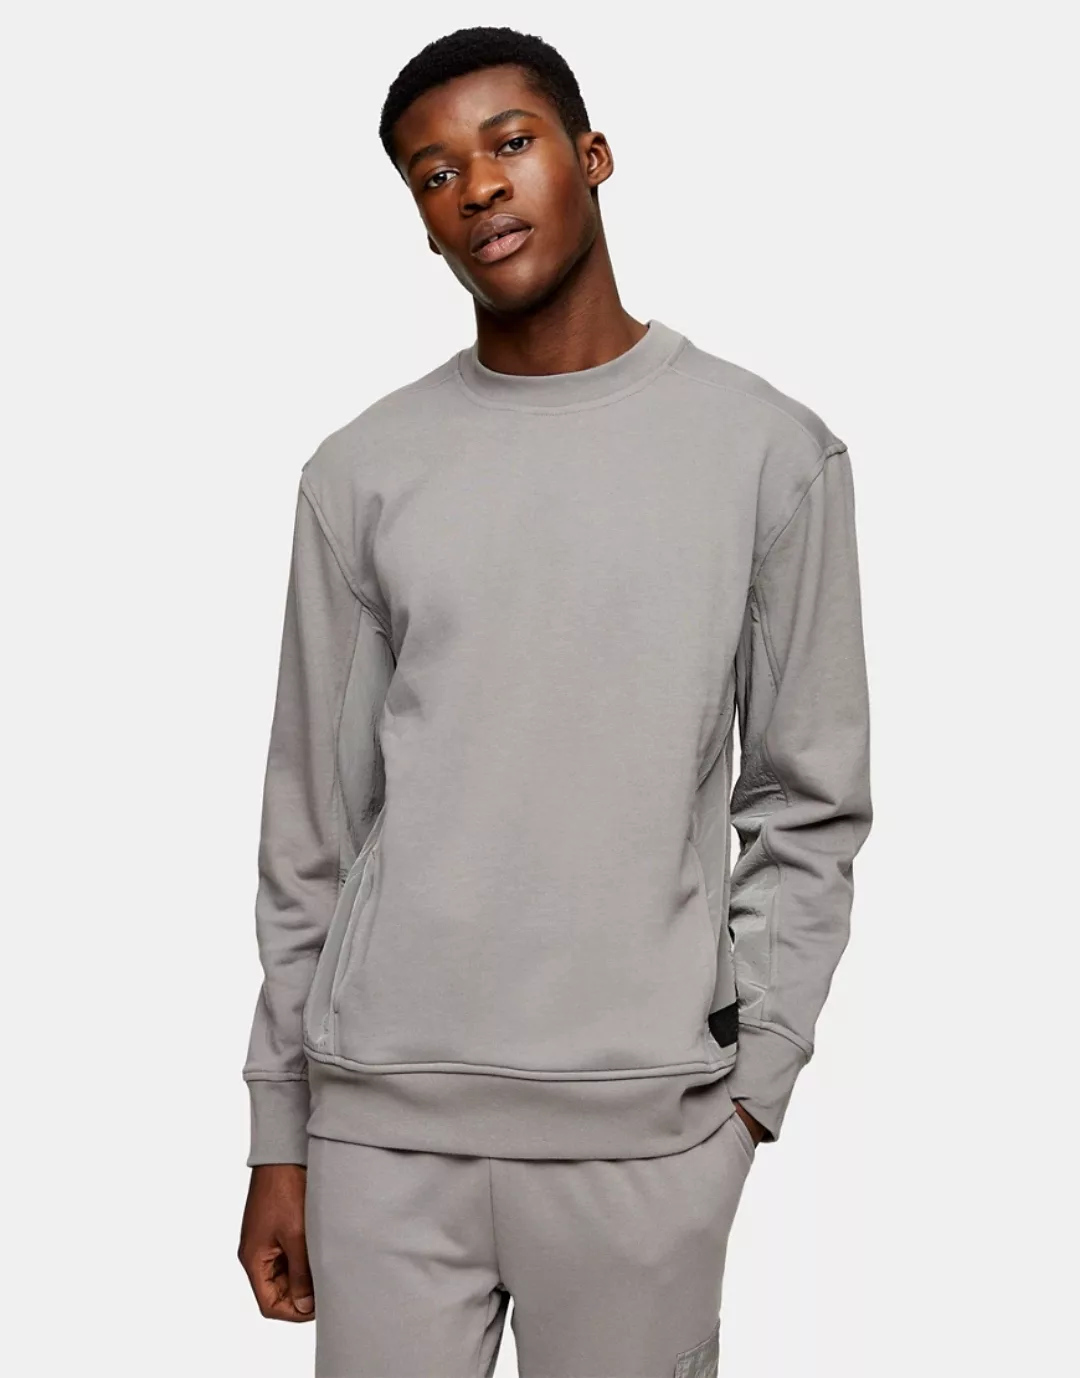 Topman – Ltd. – Sweatshirt mit Einsatz in Anthrazit-Grau günstig online kaufen